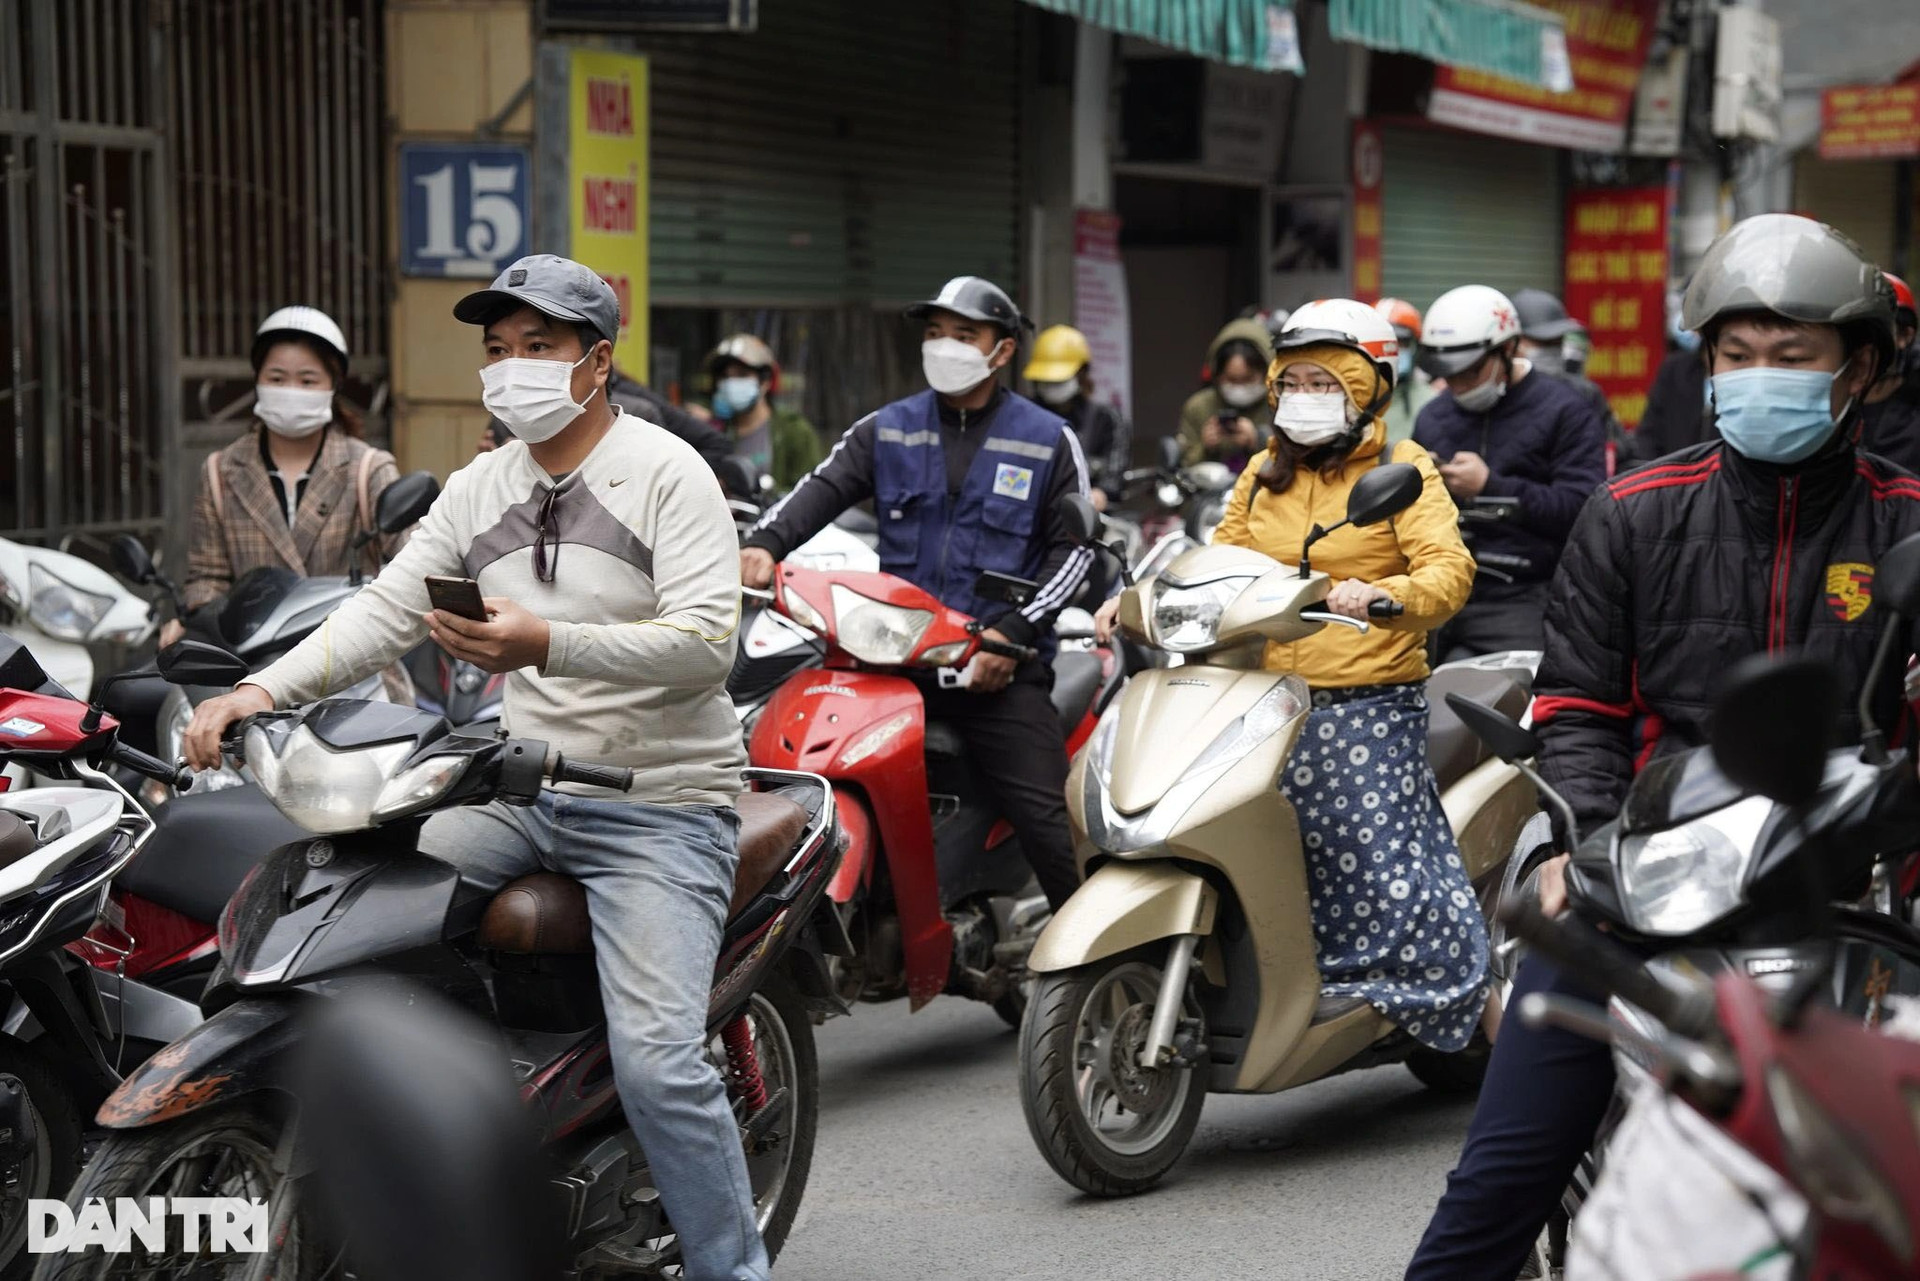 Hà Nội: Đông nghịt người quét QR Code tại ổ dịch Phú Đô - 5